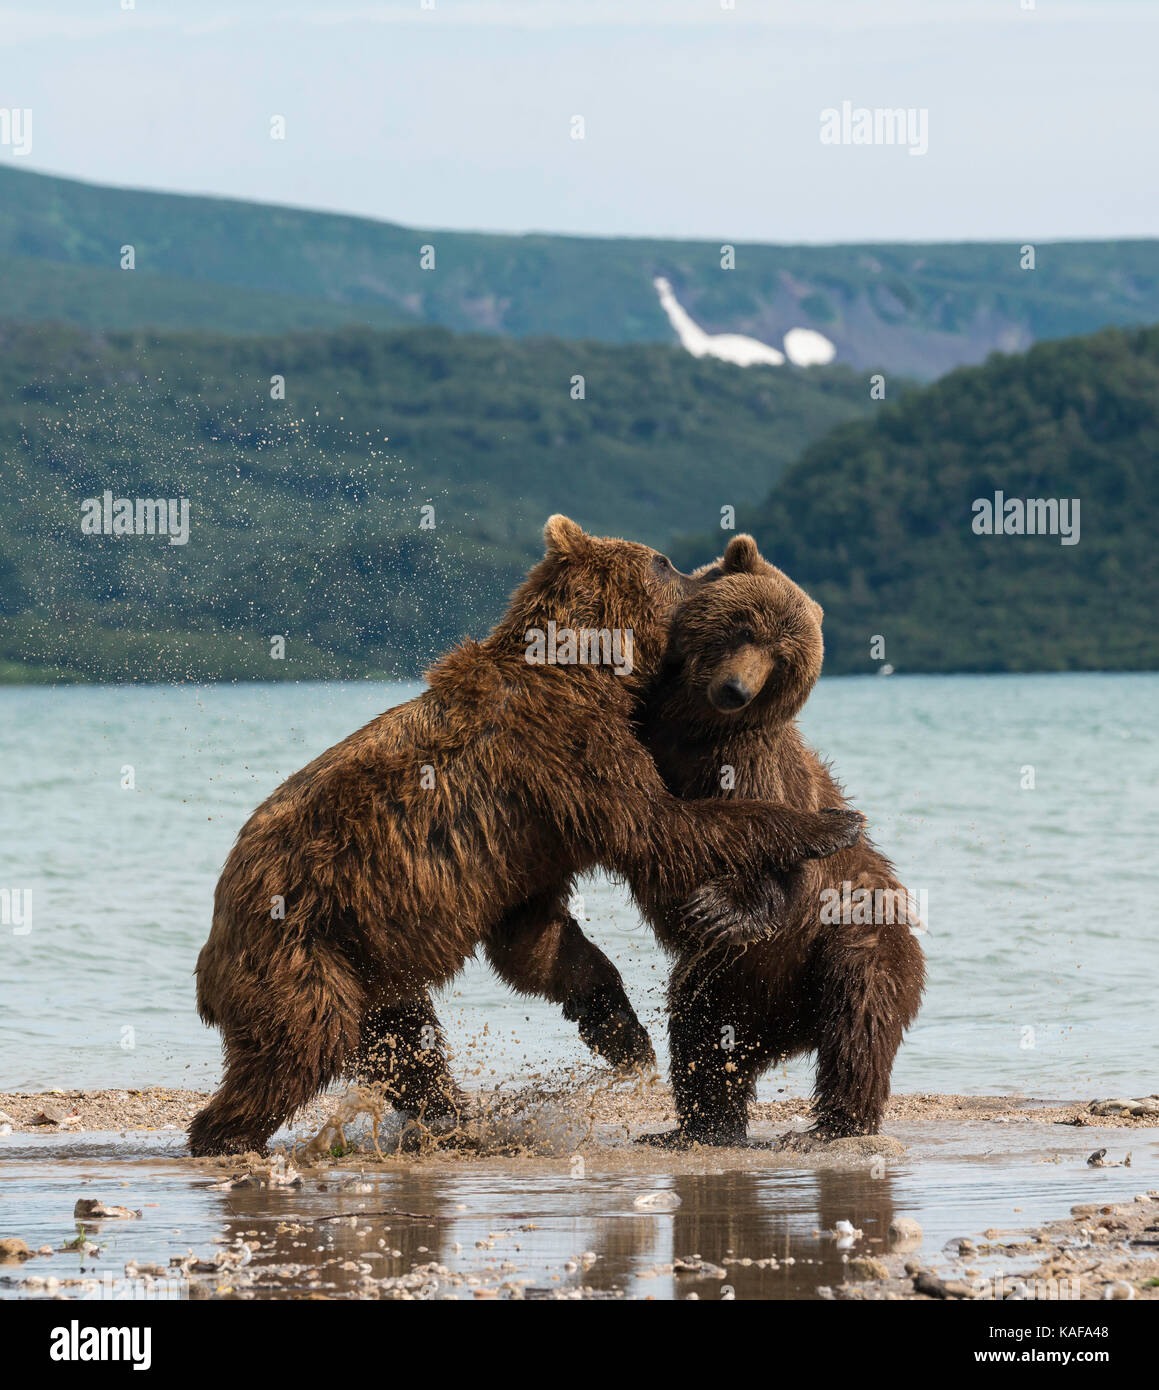 L'ours brun, deux hommes se battre pour la dominance, lac kuril, du Kamtchatka, en Russie. Banque D'Images